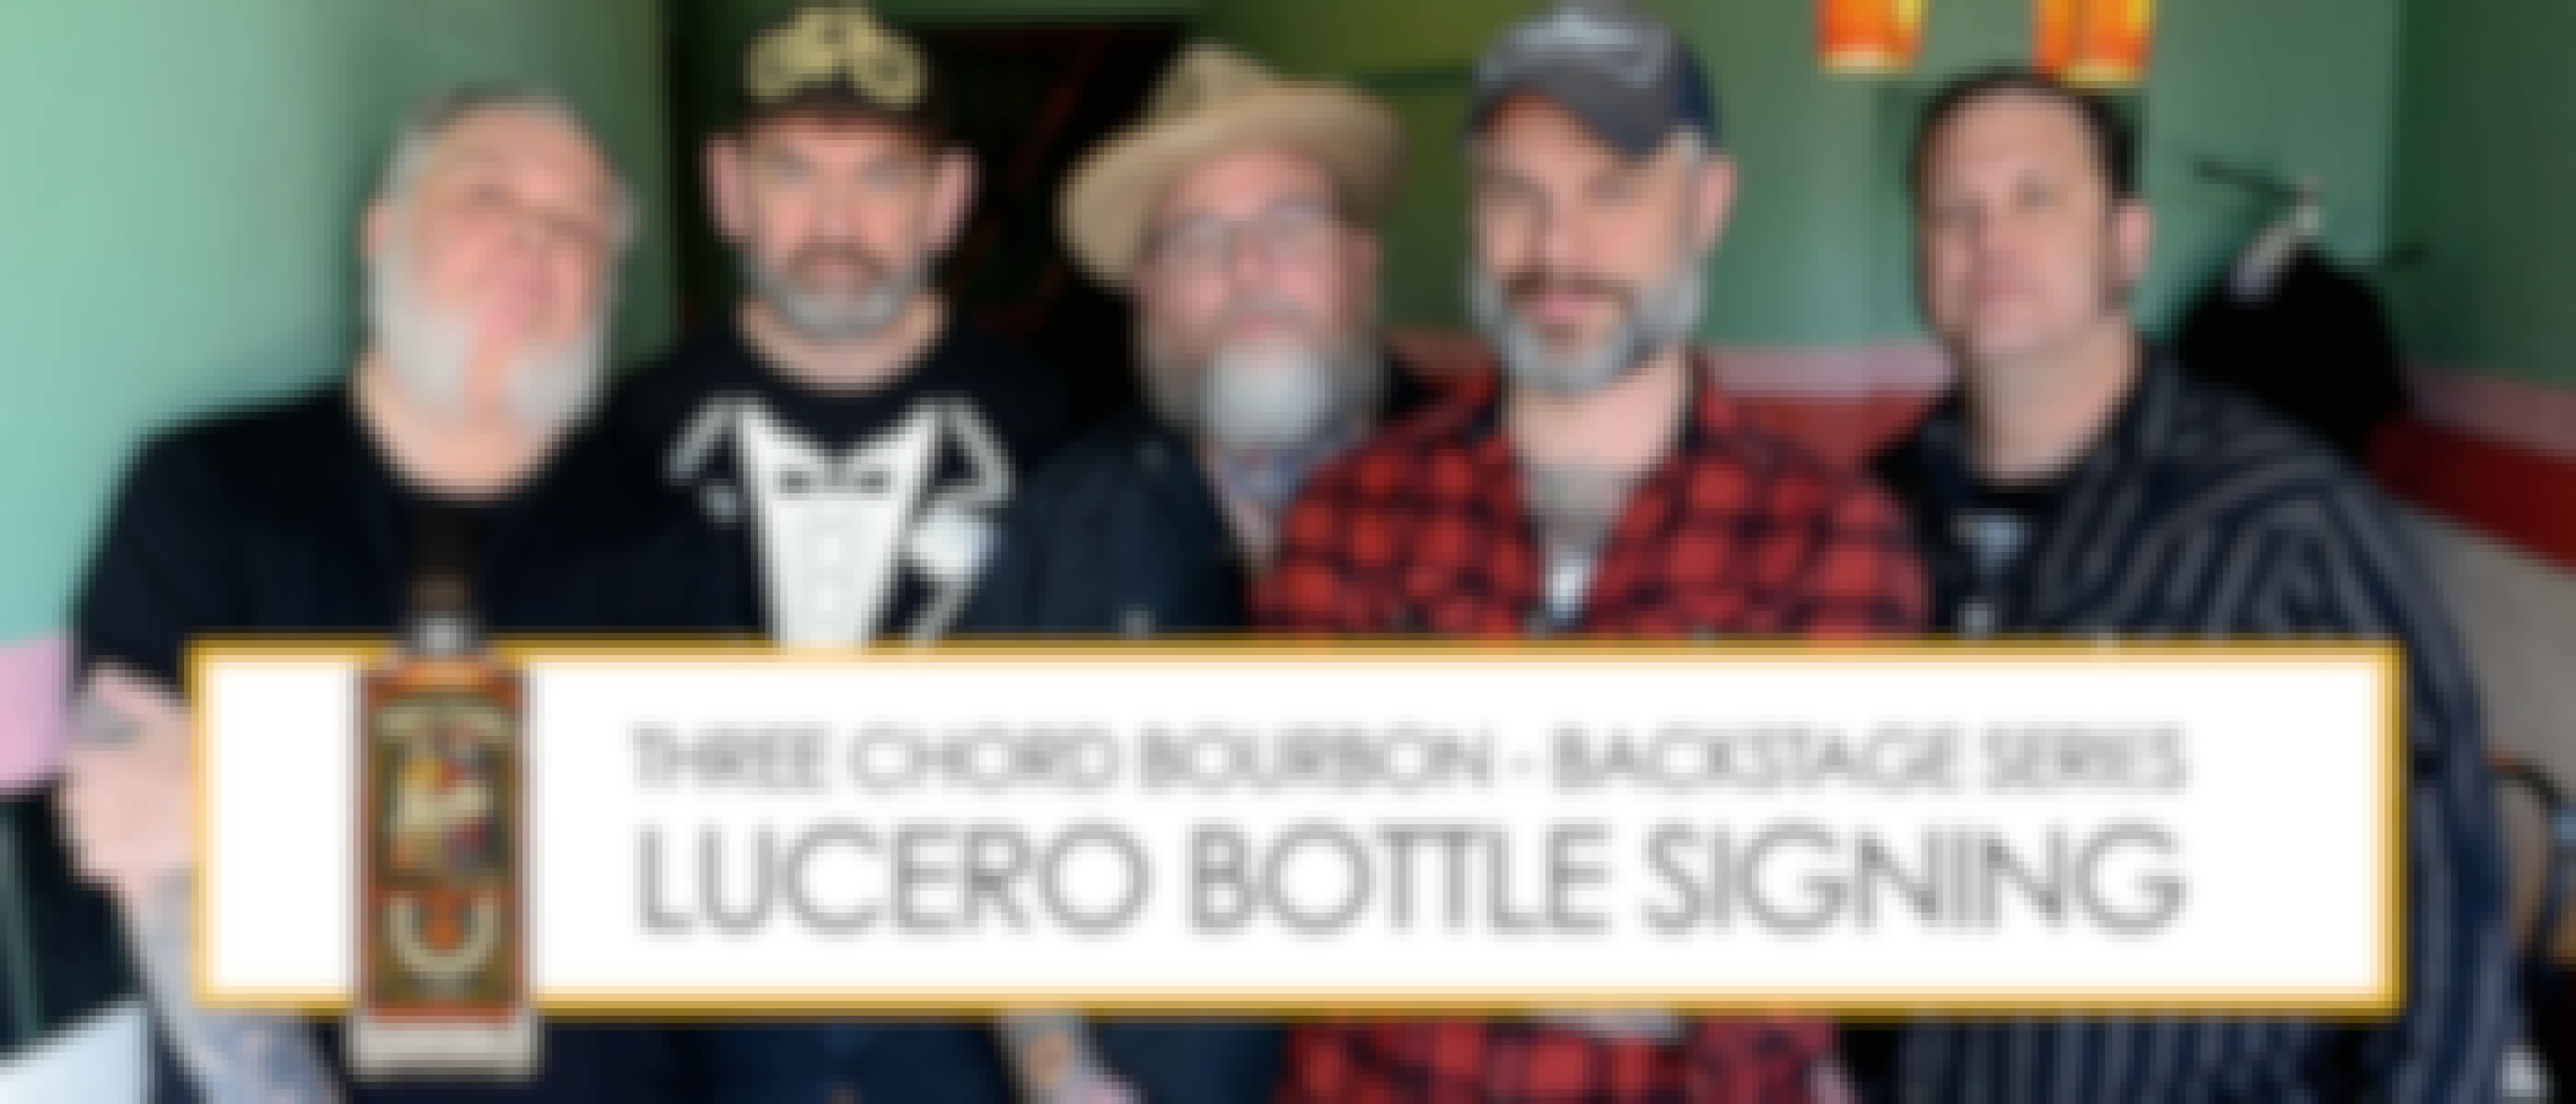  Lucero Three Chord Bottle Signing